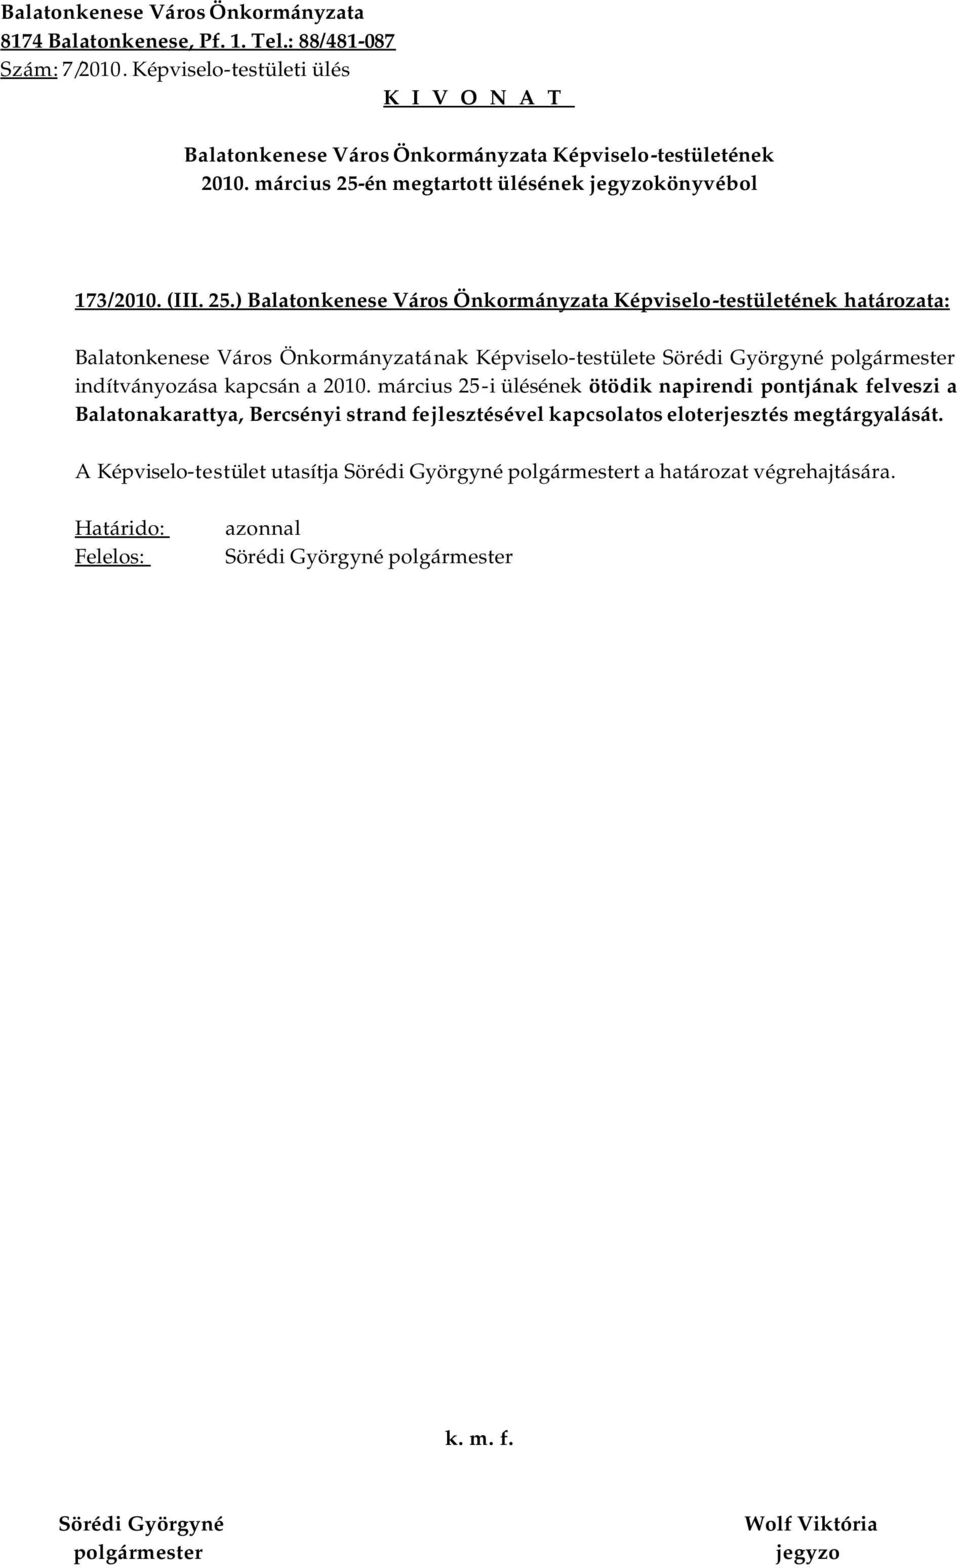 ) határozata: Balatonkenese Város Önkormányzatának Képviselo-testülete indítványozása kapcsán a i